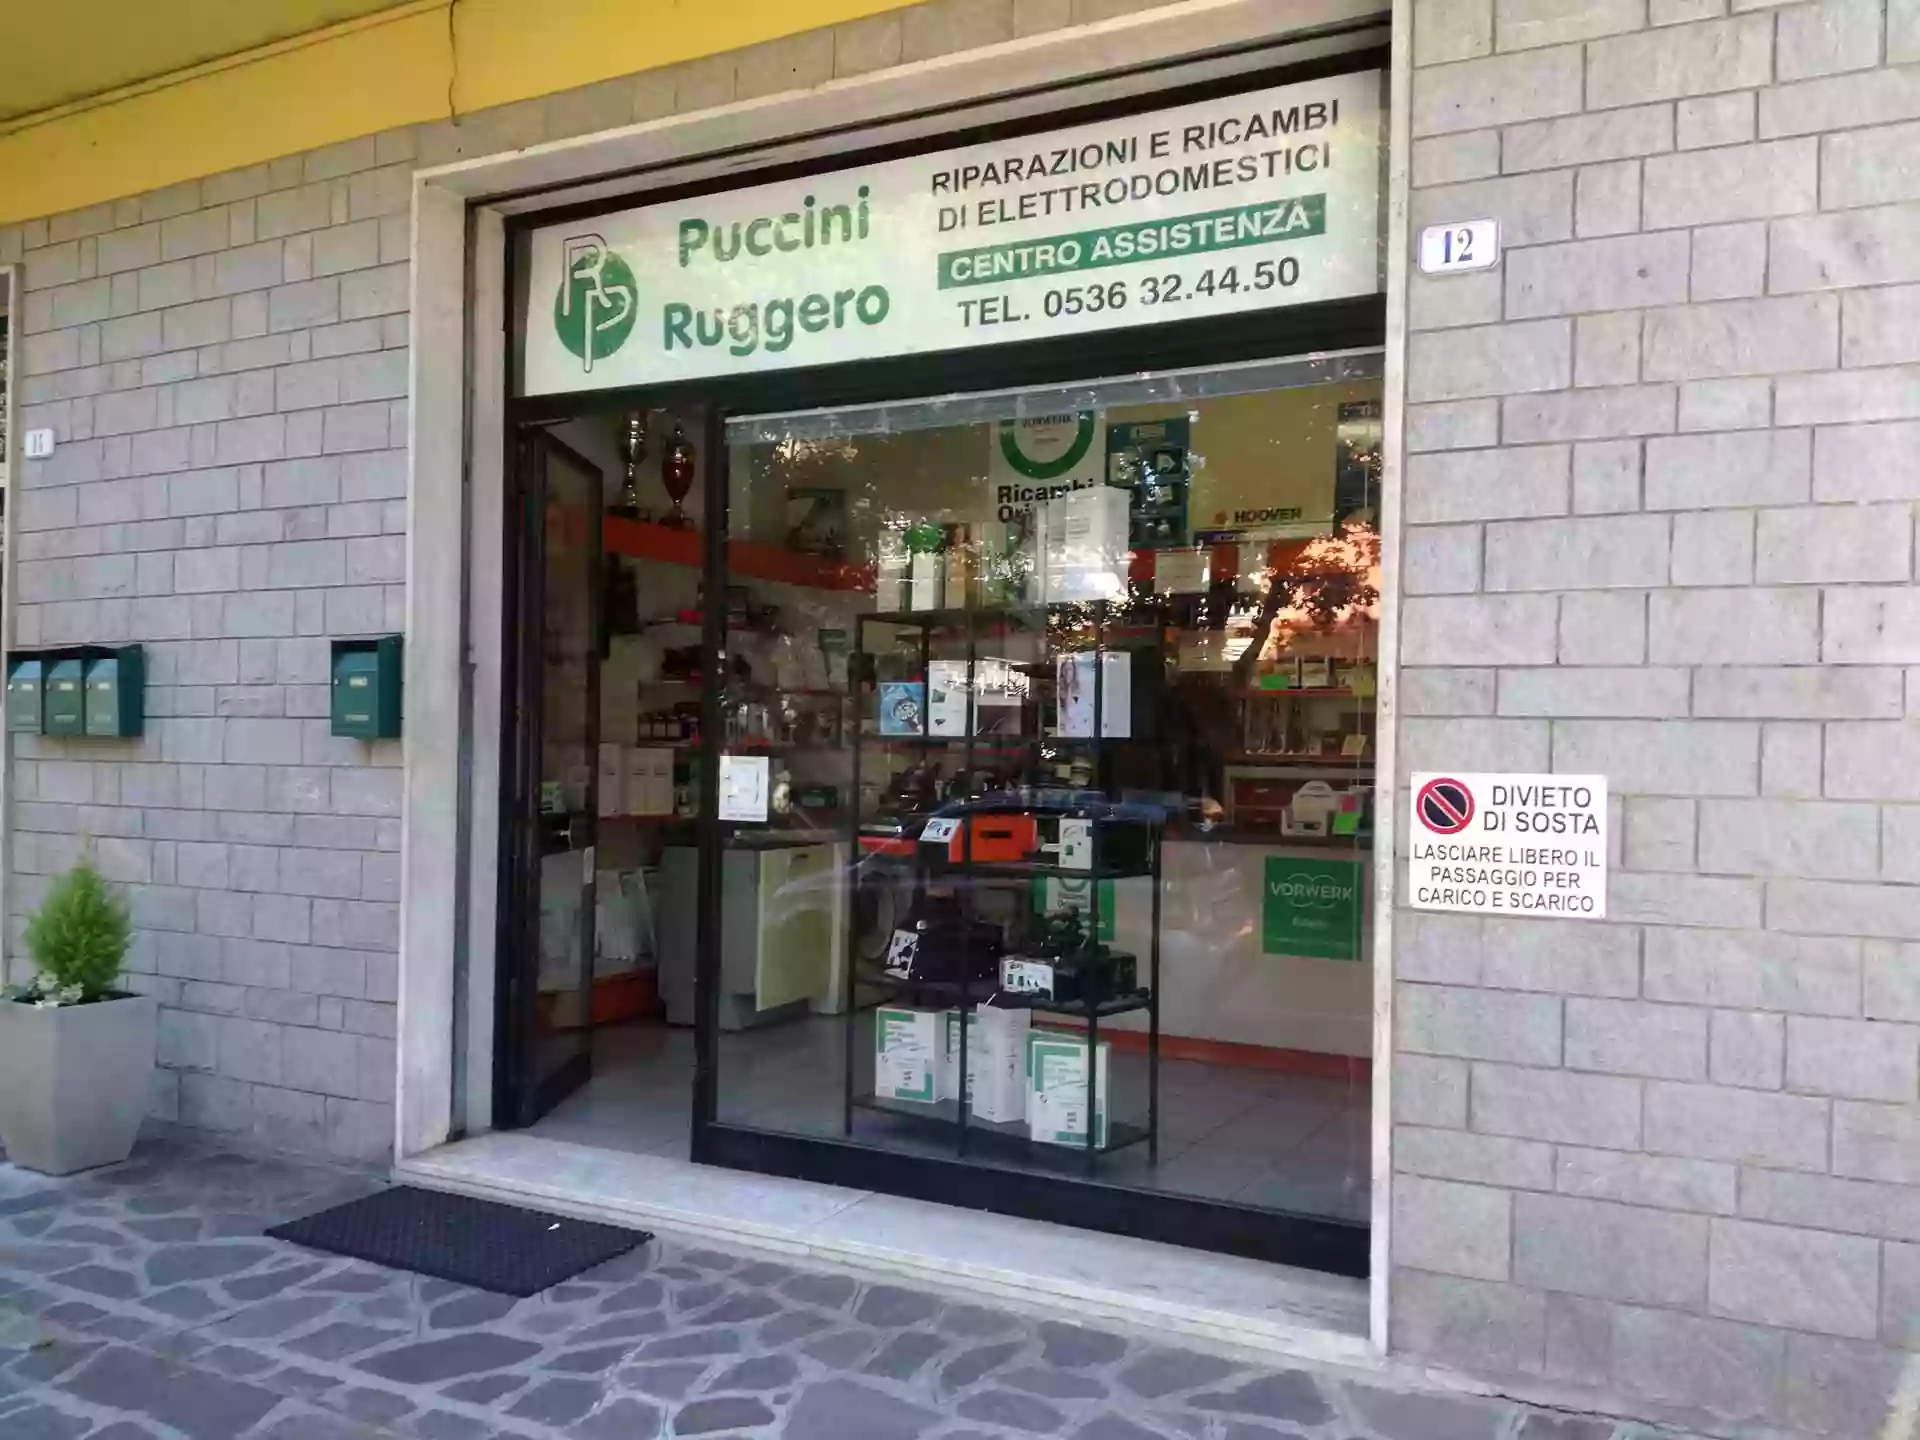 Puccini Ruggero | Riparazione e Ricambi Elettrodomestici